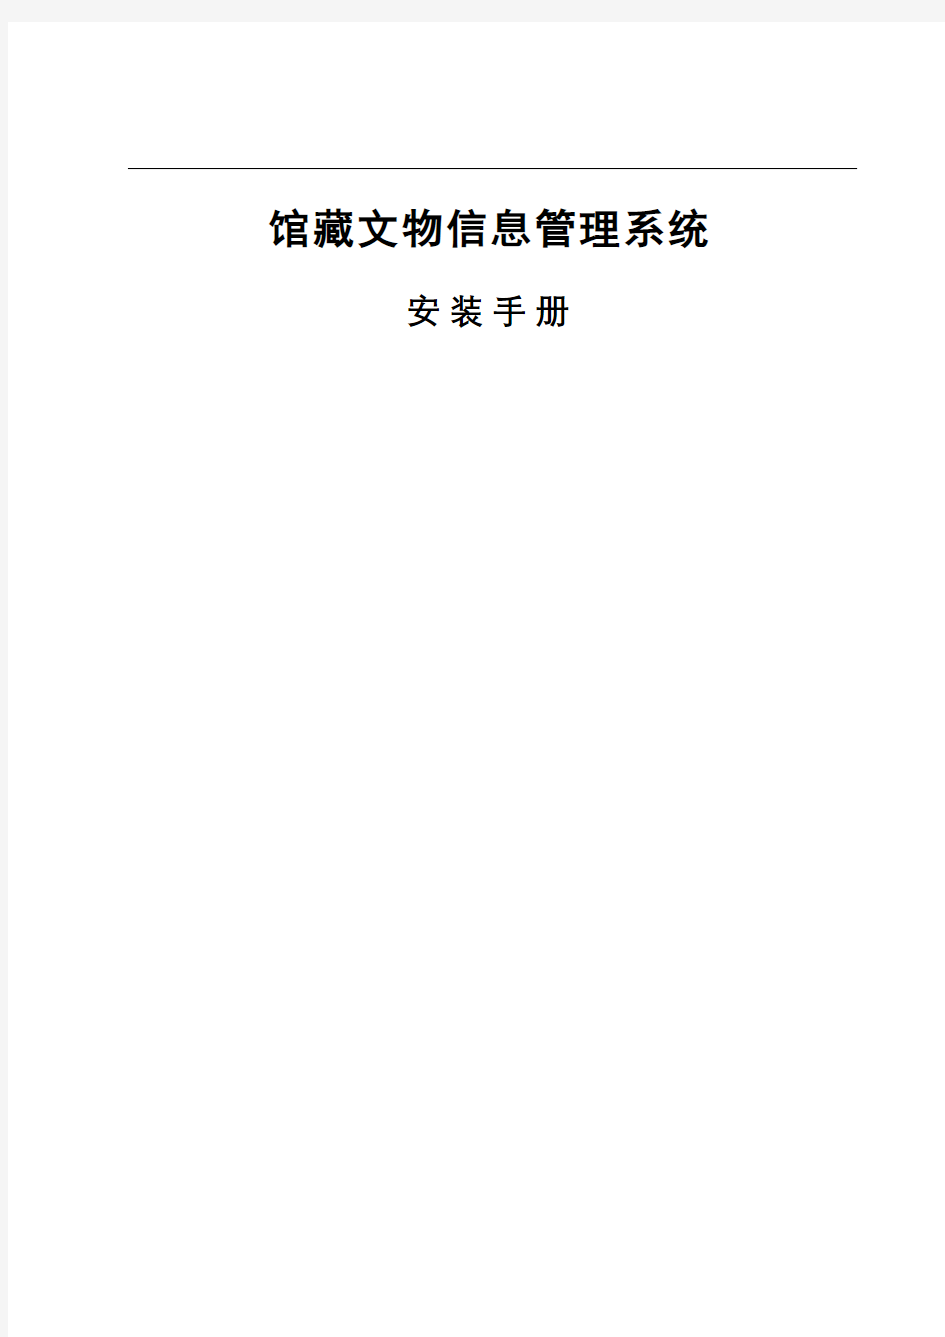 馆藏文物信息管理系统安装手册